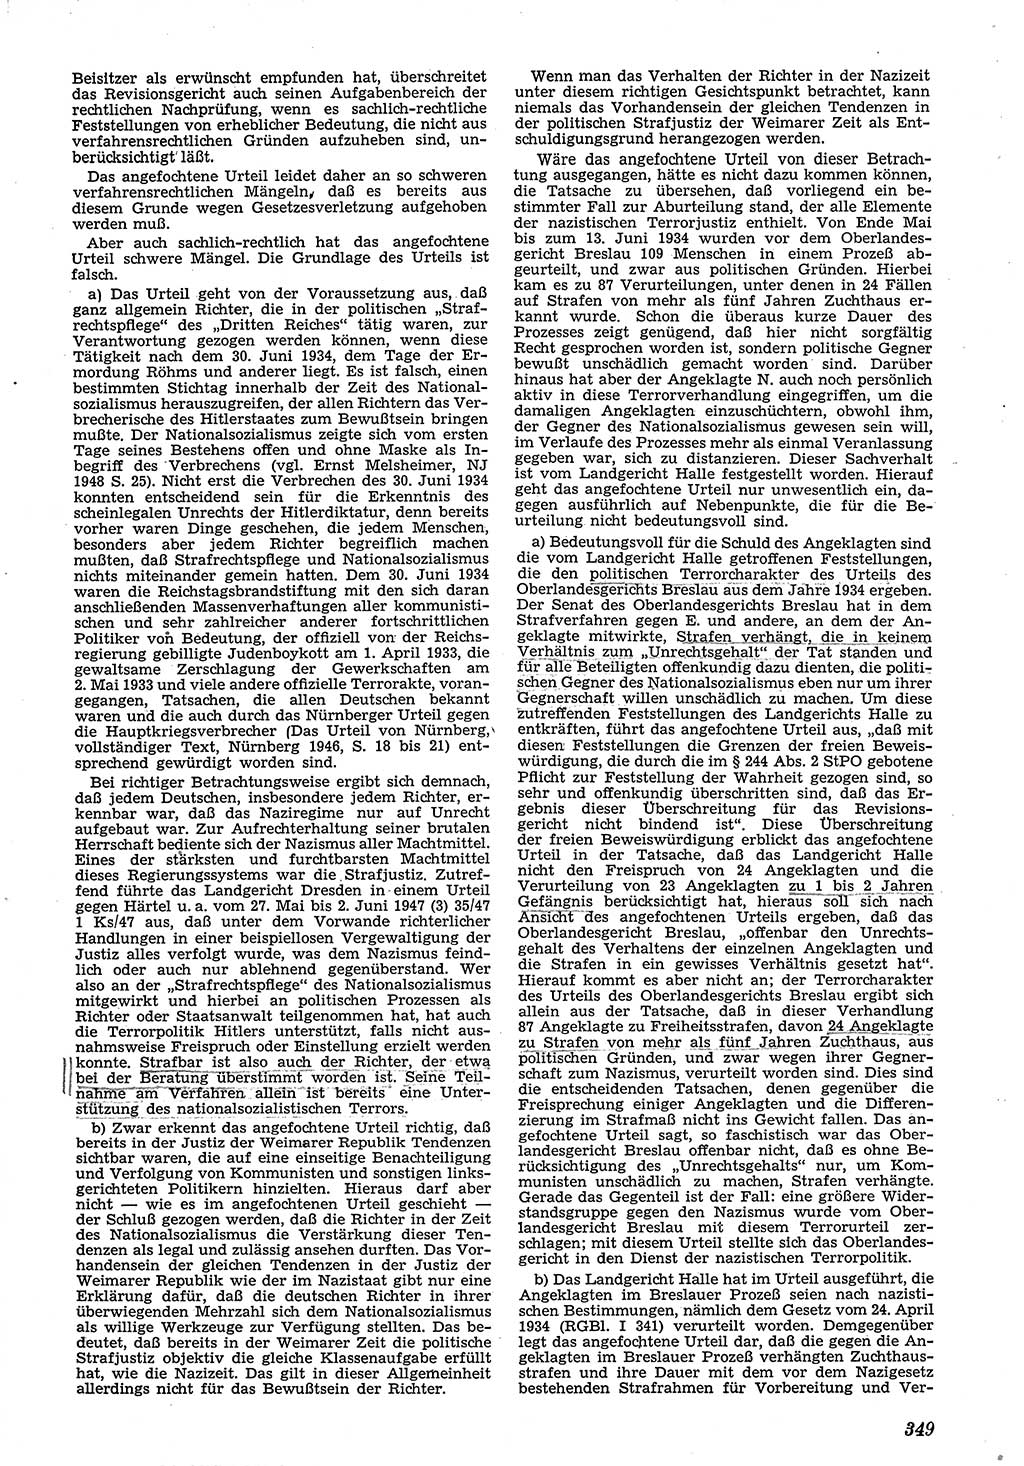 Neue Justiz (NJ), Zeitschrift für Recht und Rechtswissenschaft [Deutsche Demokratische Republik (DDR)], 4. Jahrgang 1950, Seite 349 (NJ DDR 1950, S. 349)